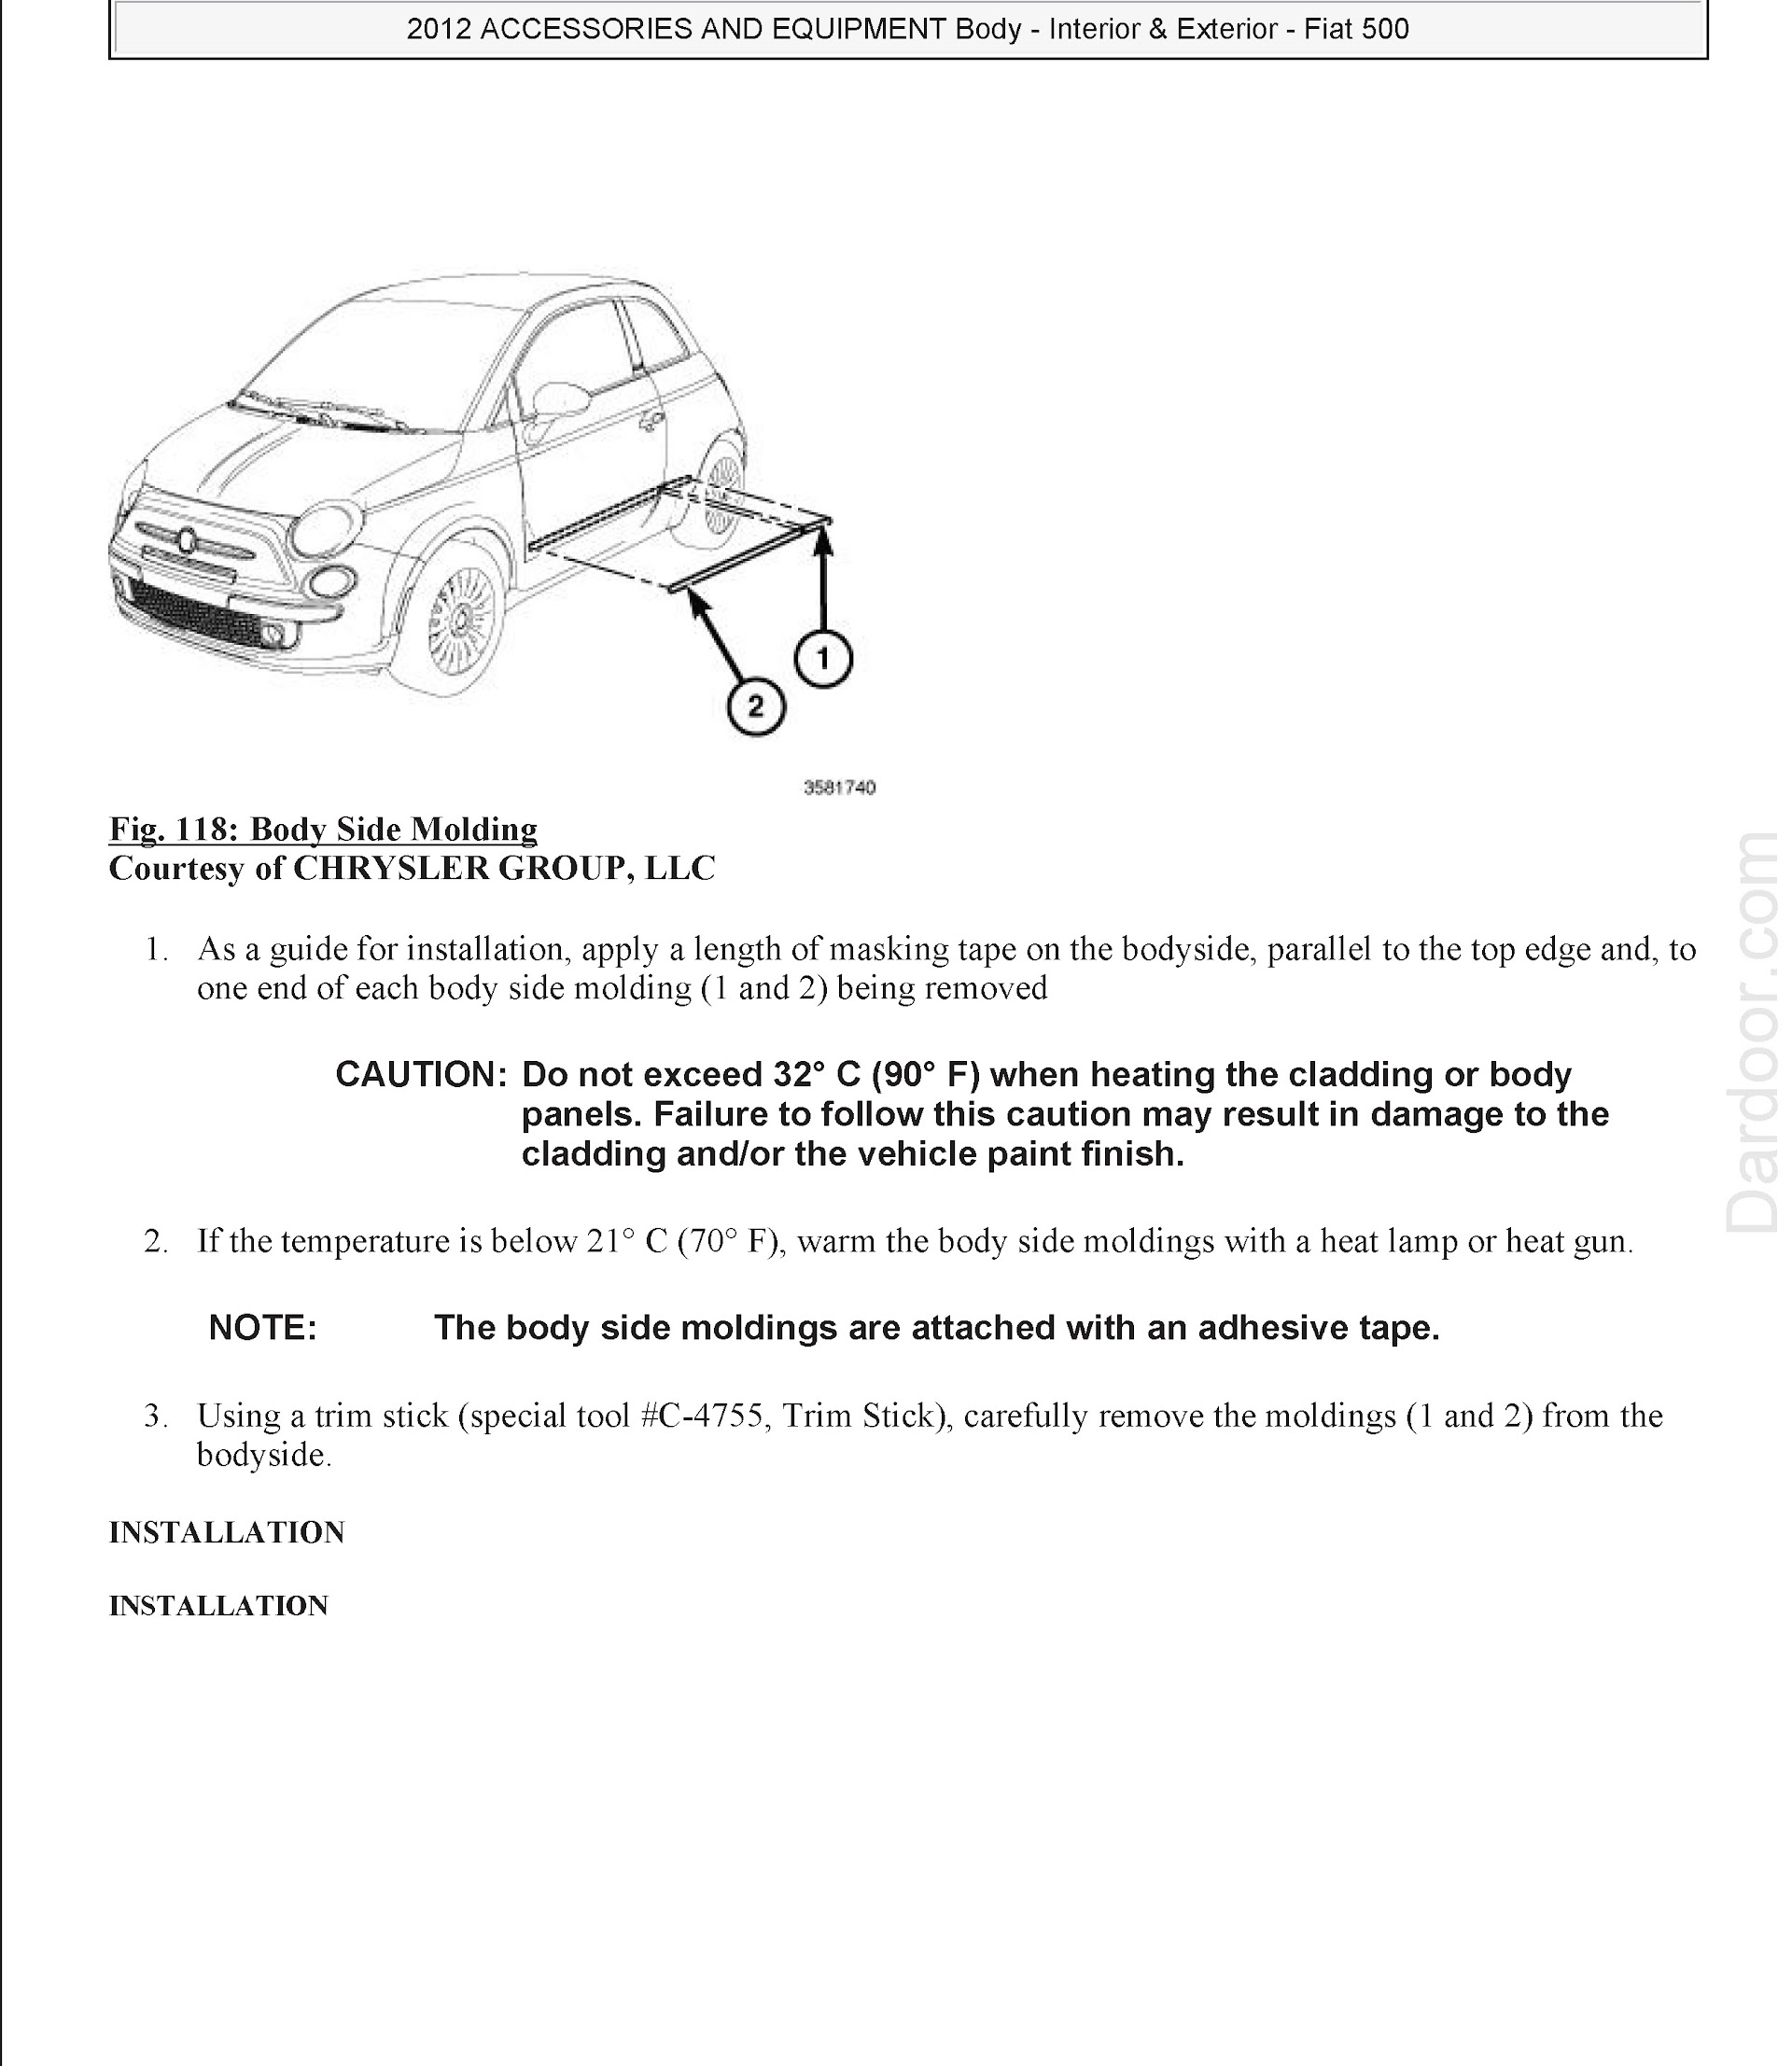 Download 2012 Fiat 500 Repair Manual